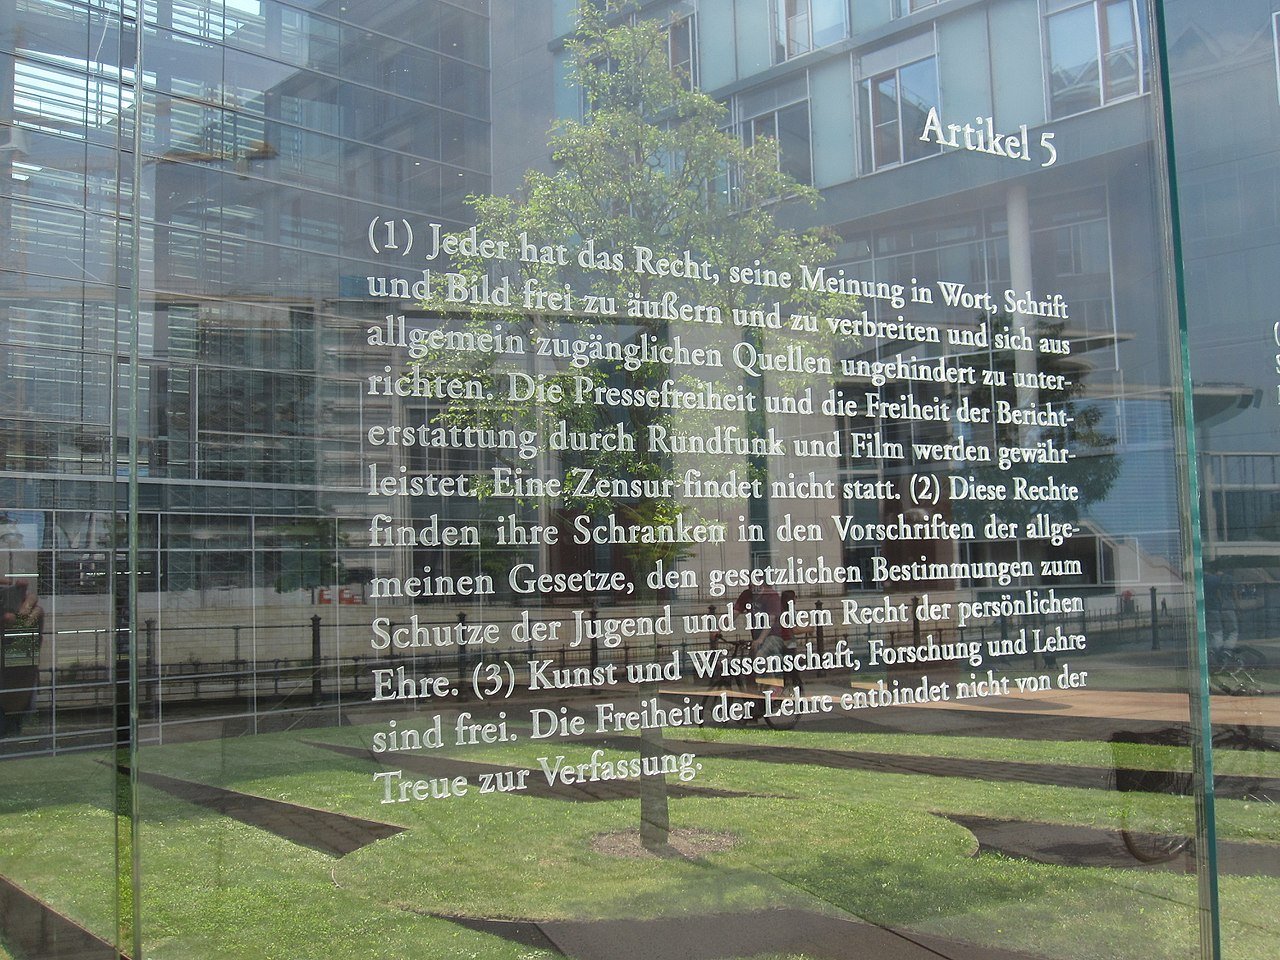 Artikel 5 des Grundgesetzes ist auf einer Glasscheibe zur Spreeseite beim Jakob-Kaiser-Haus des Deutschen Bundestags in Berlin eingraviert.